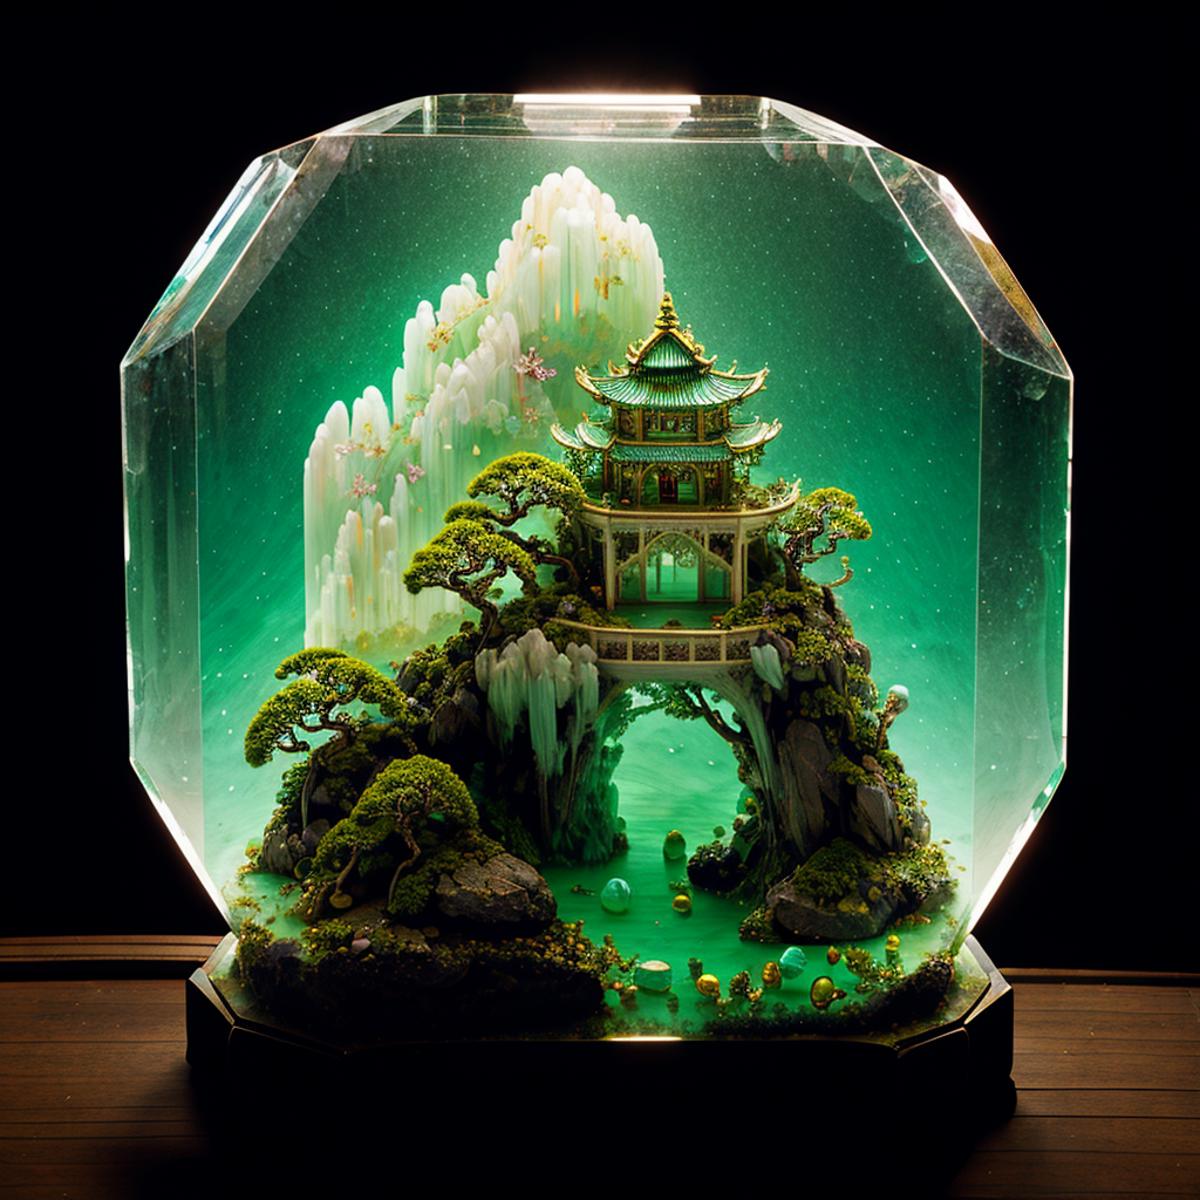 微型山水盆景 Miniature bonsai image by ali_ali